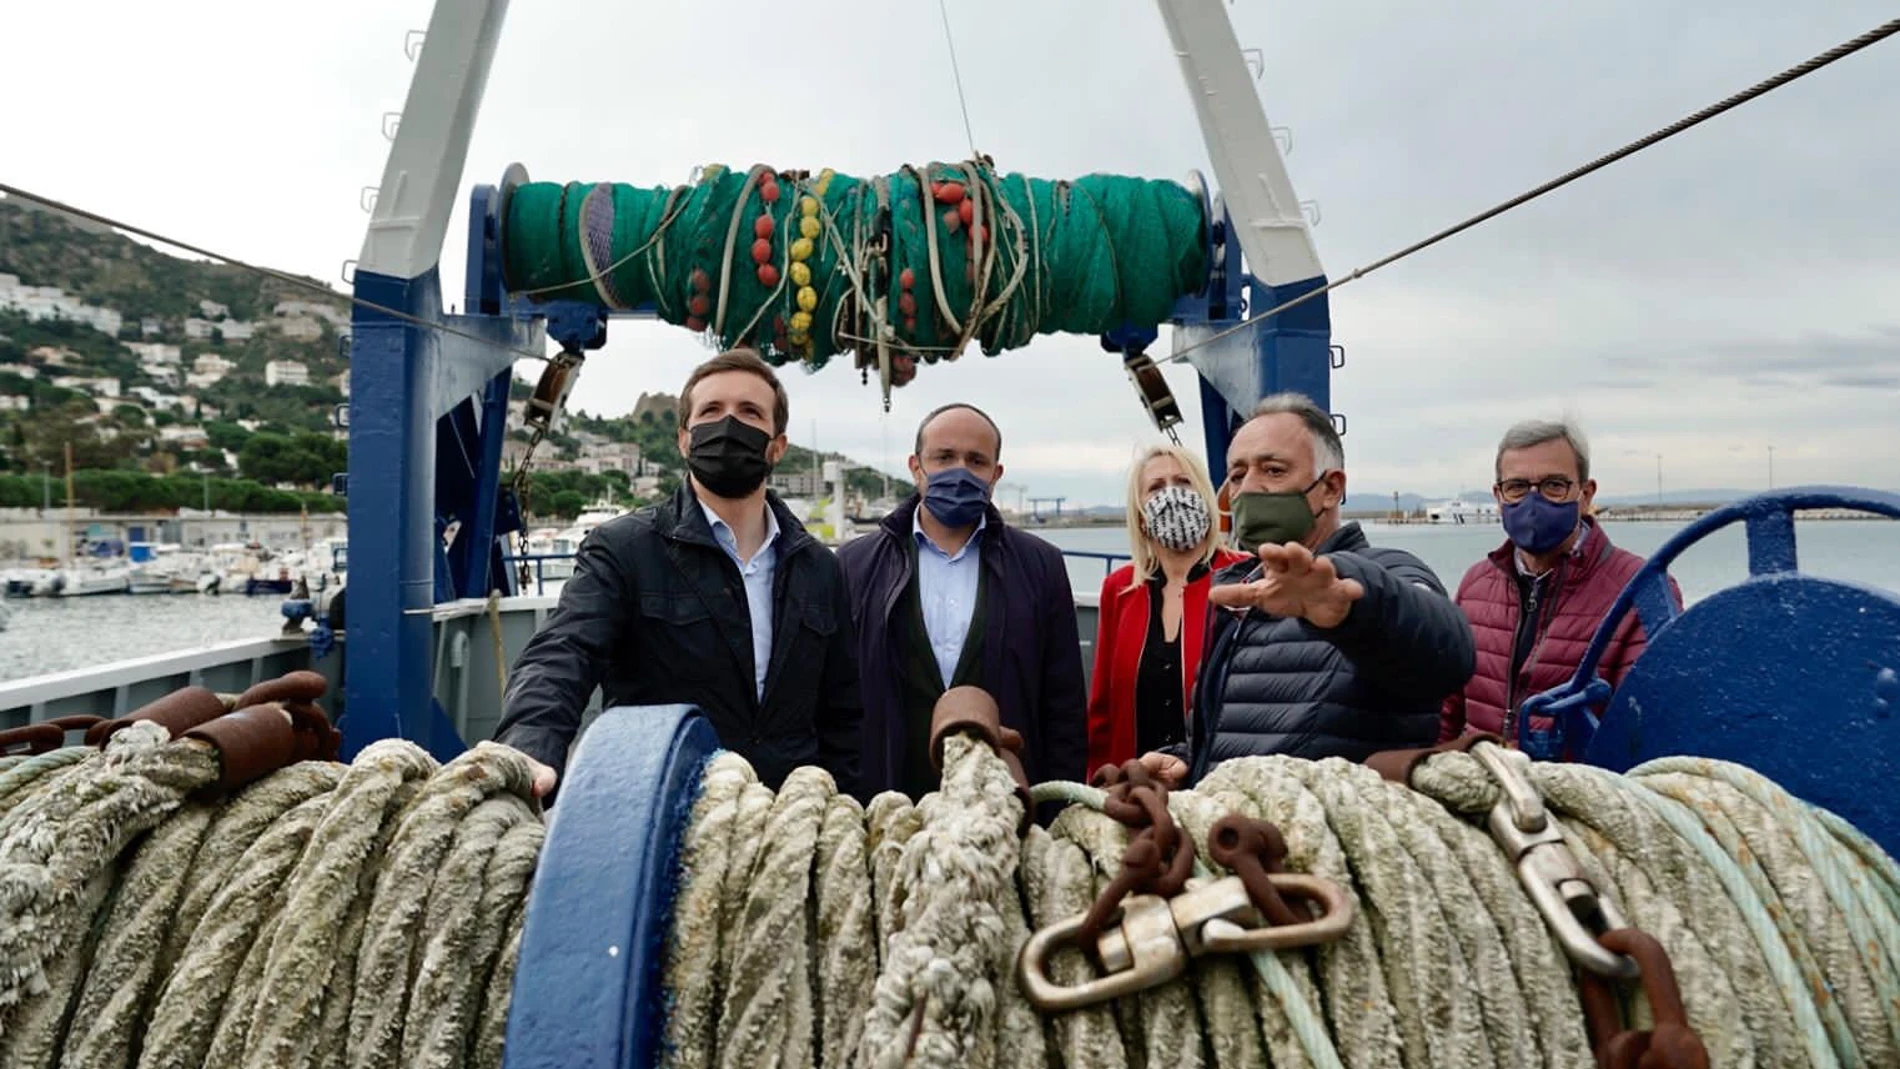 El lÍder del PP, Pablo Casado ha visitado a las cofrafías de pescadores junto al presidente del PPC, Alberto Fernández en Roses (Girona)